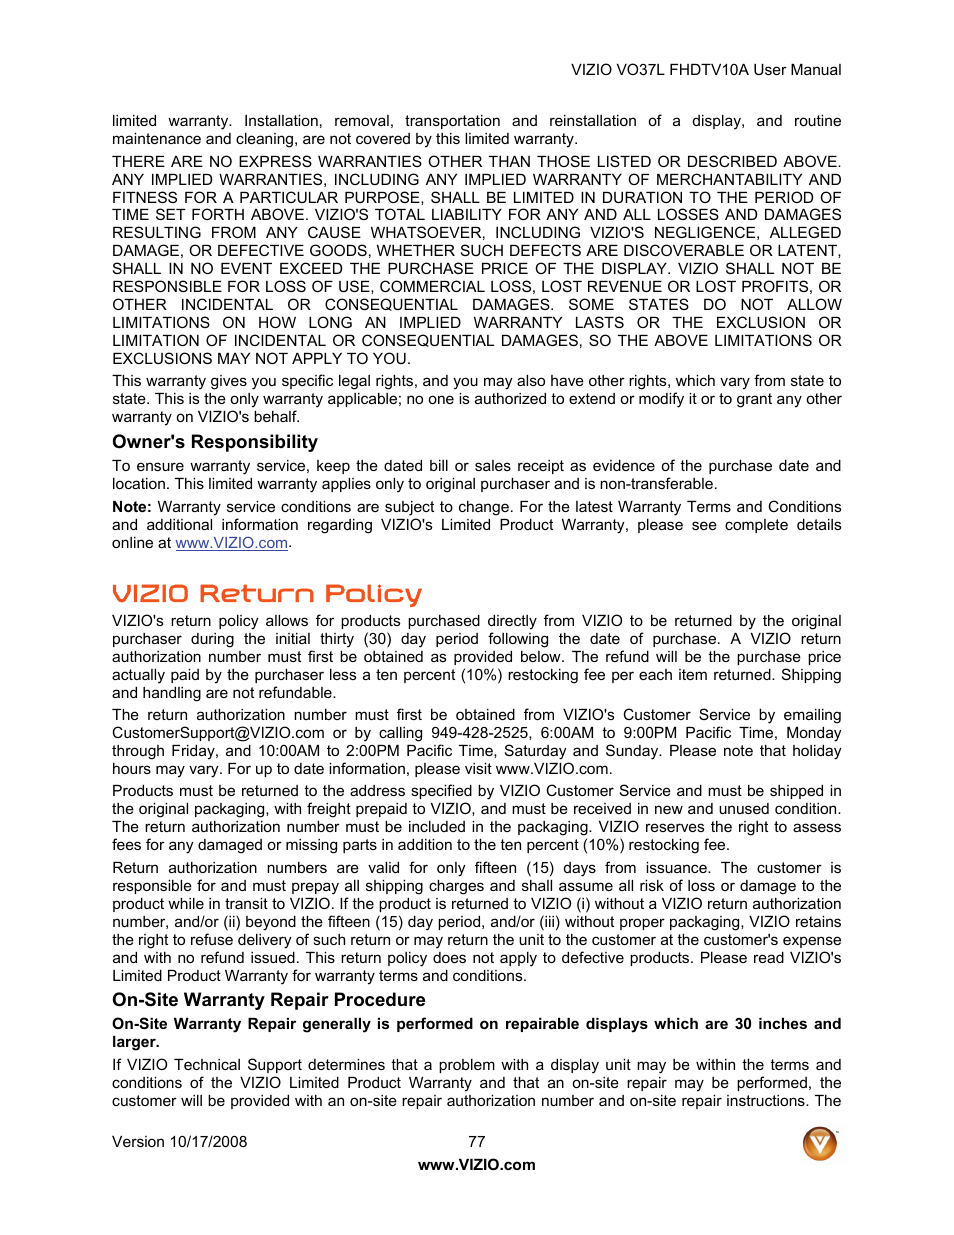 Vizio return policy | Vizio VO37L FHDTV10A User Manual | Page 77 / 80